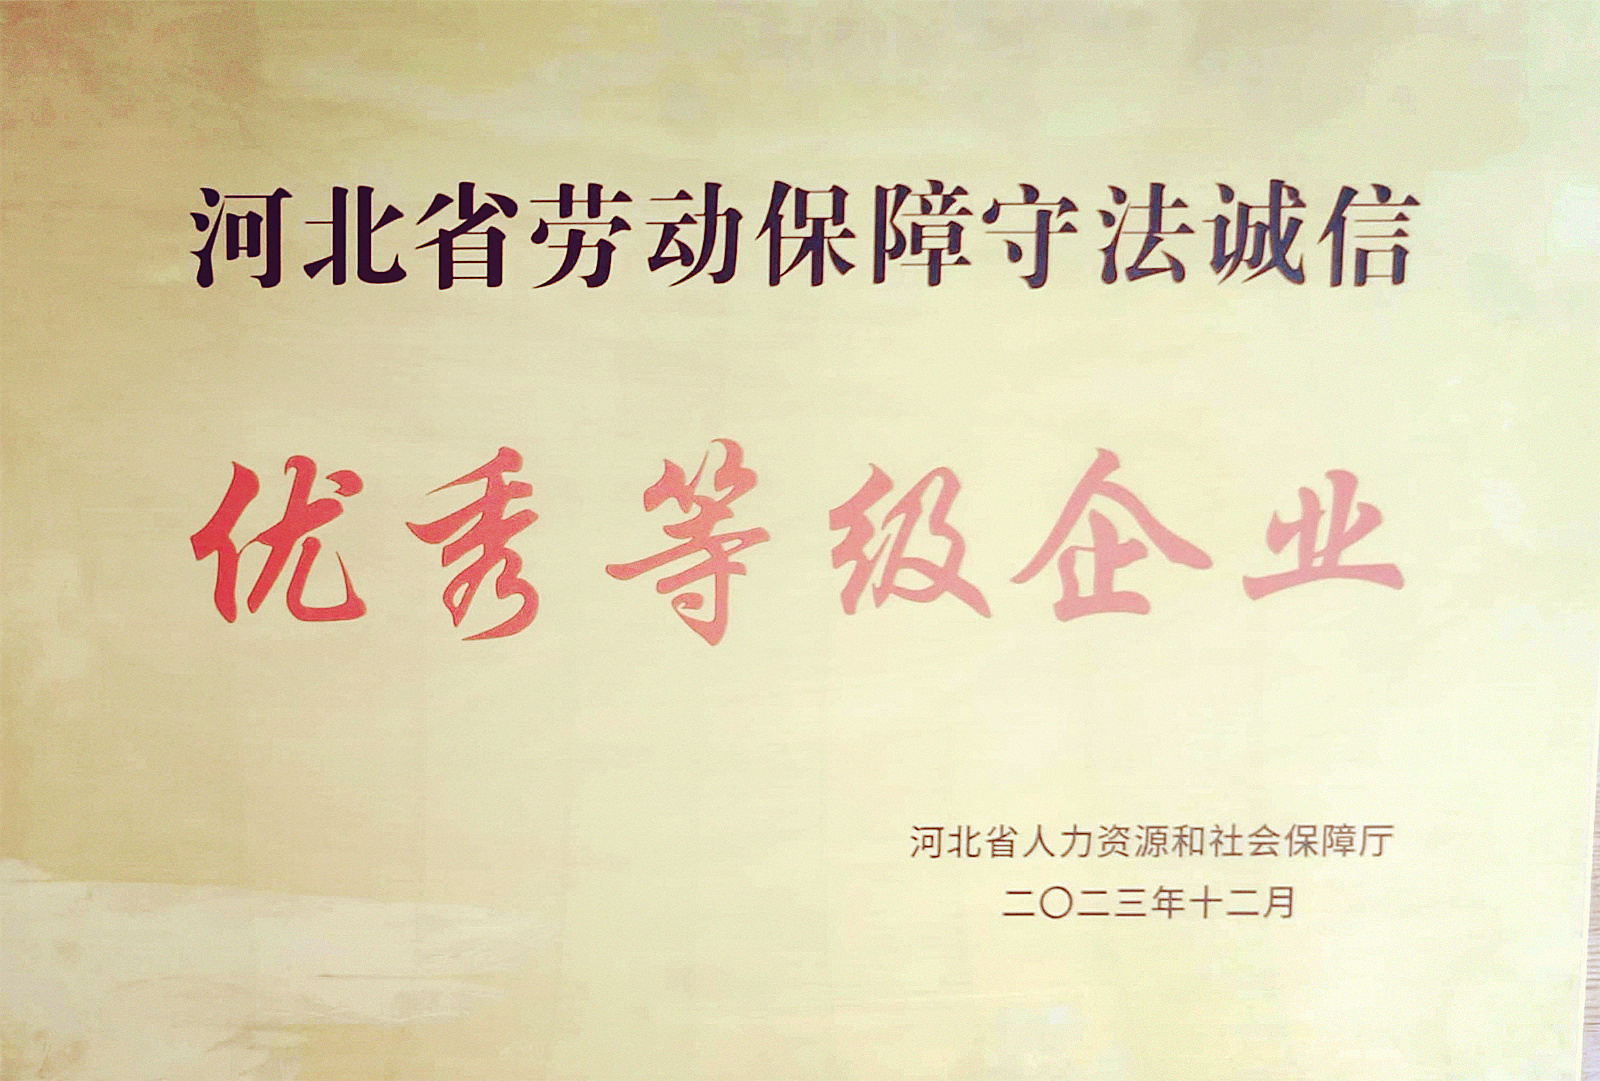 中船风帆有色金属分公司获评河北省劳动保障守法诚信“优秀等级企业”